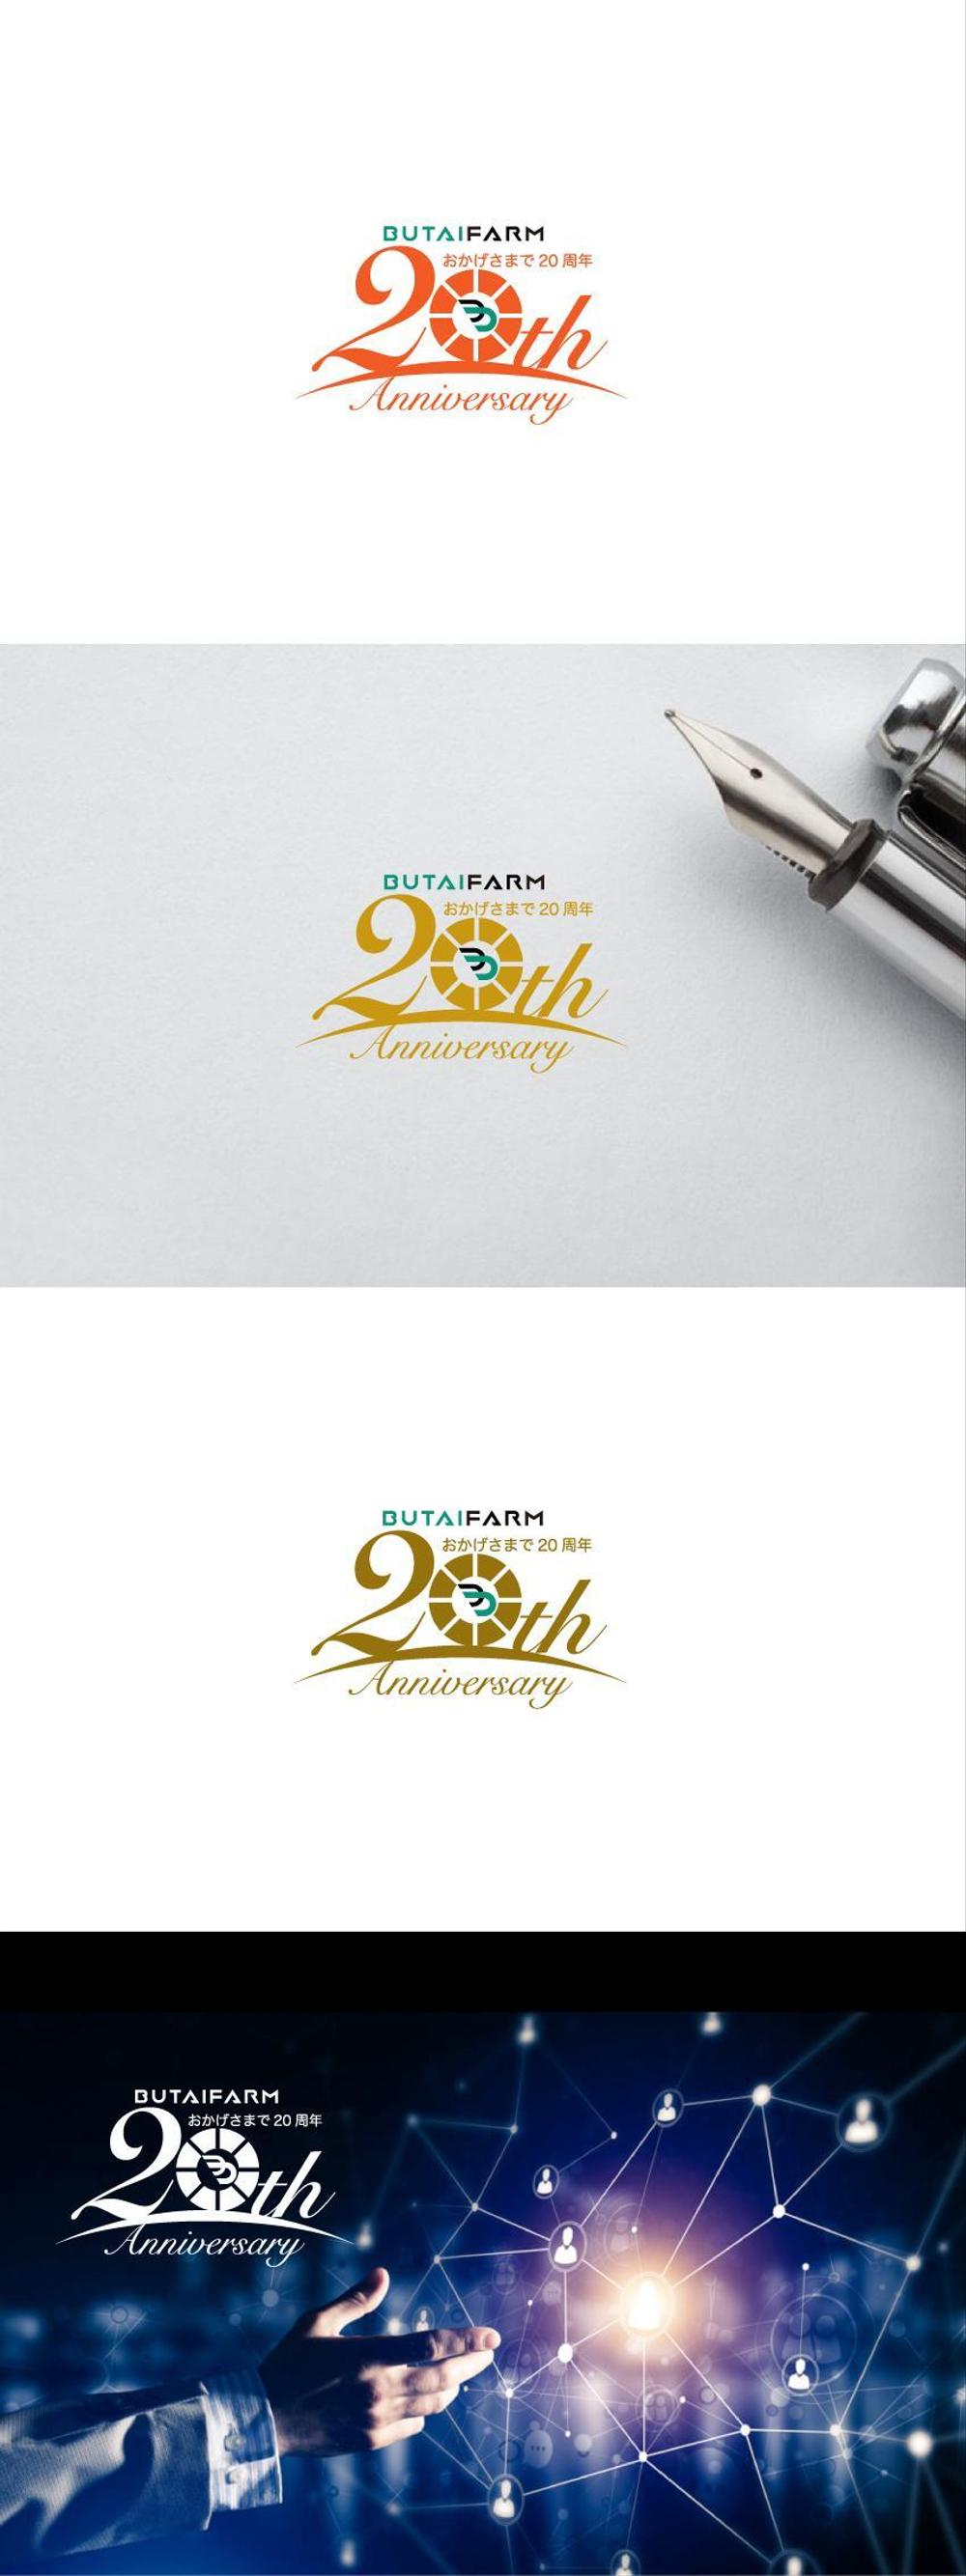 日本農業のリーディングカンパニー舞台ファームの20th Anniversaryロゴの作成